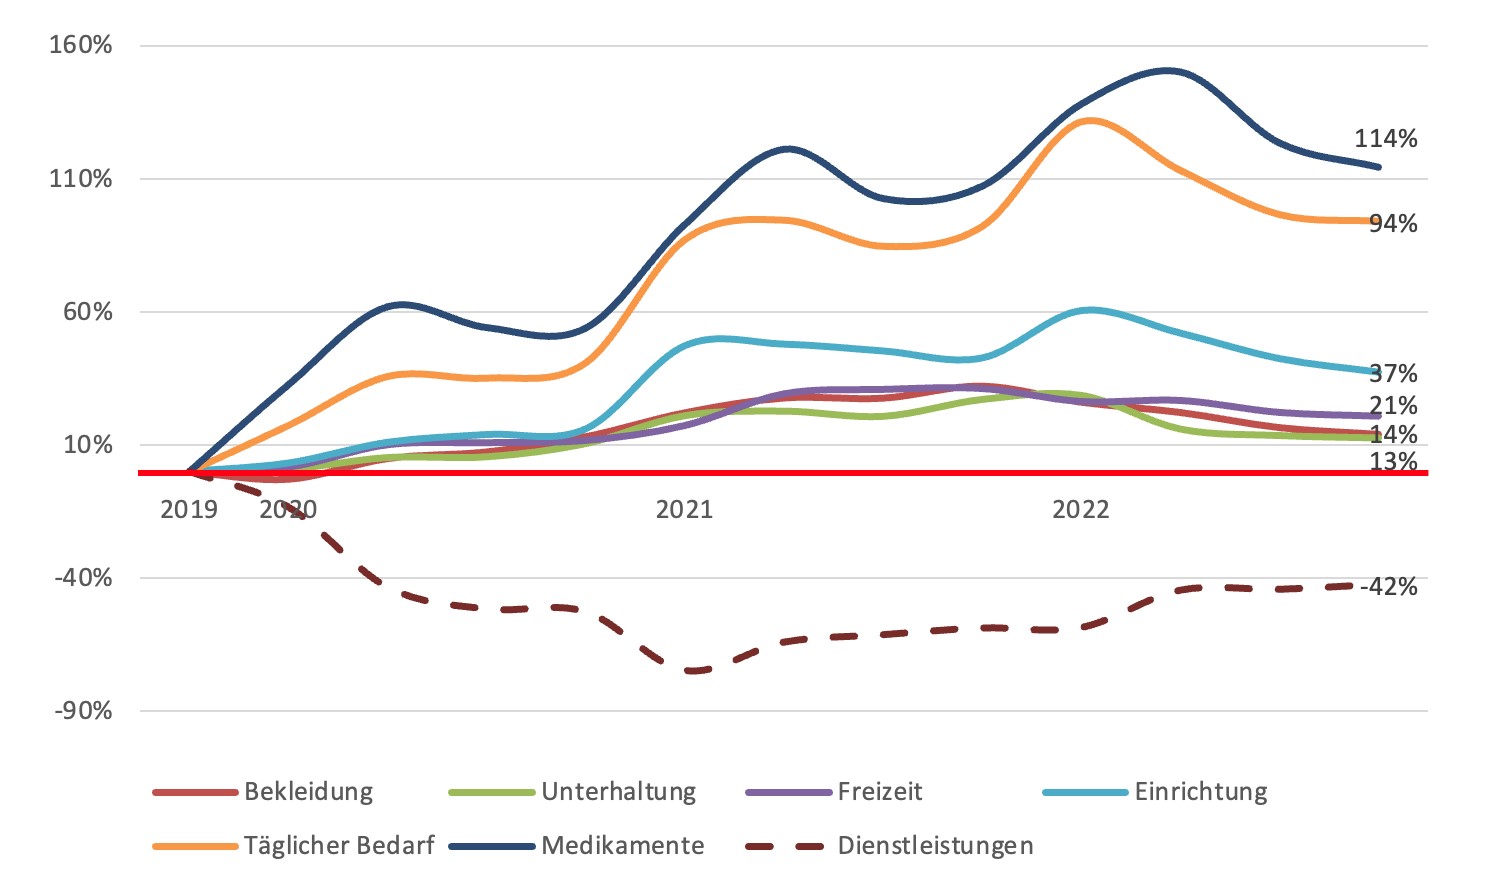 Basis der Trendlinie: Quartalsumstze in Millionen Euro - Quelle: bevh